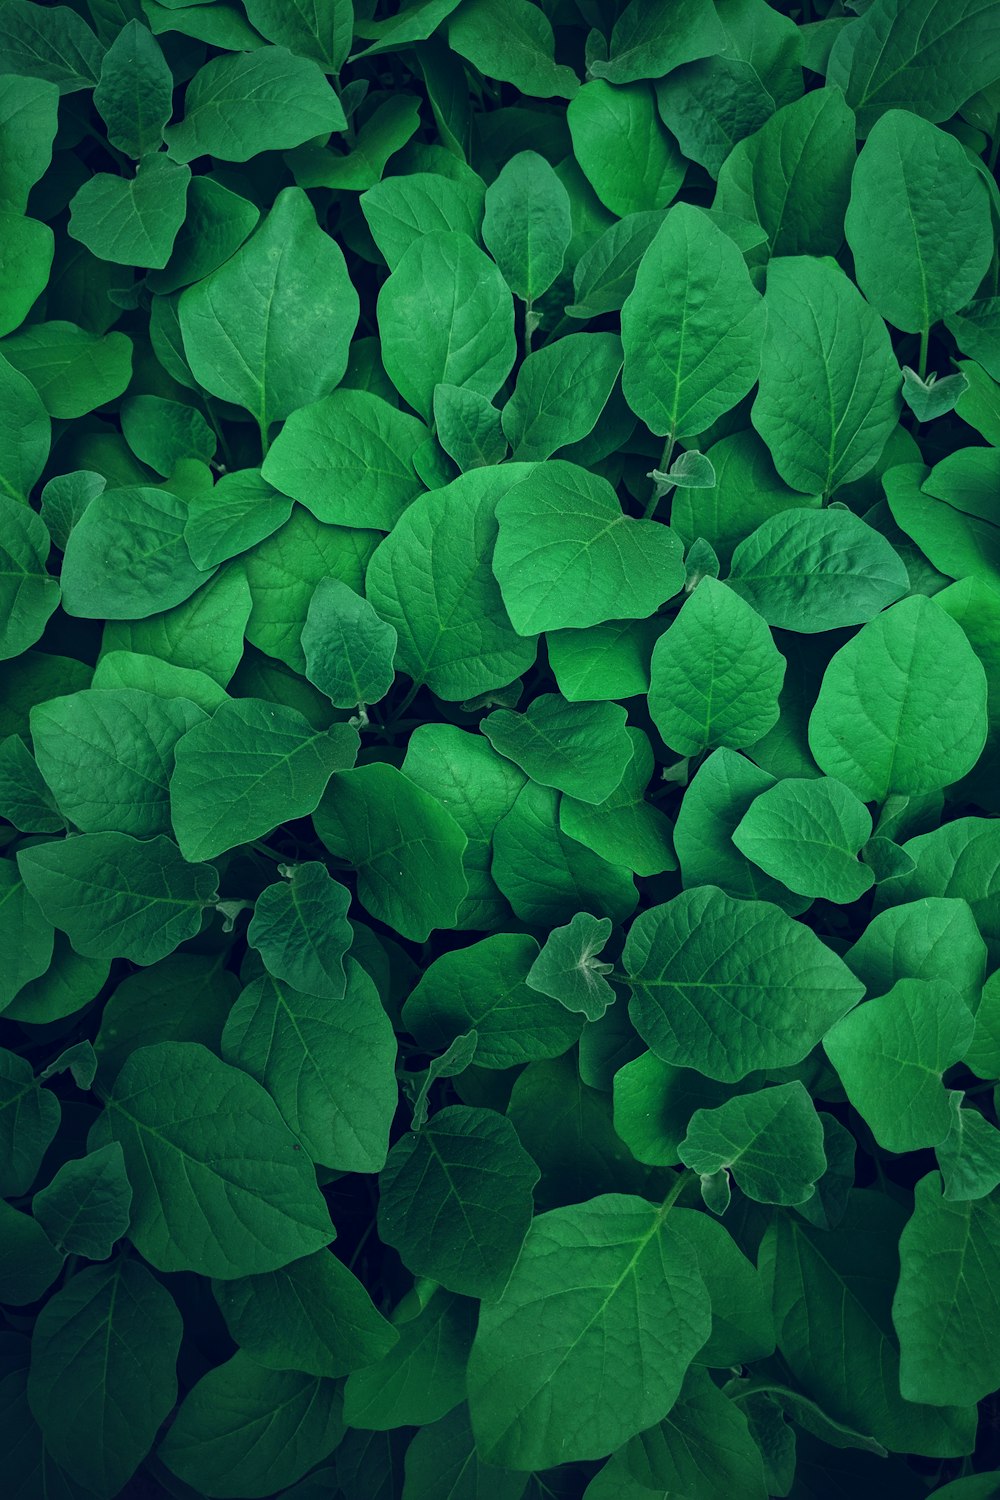 녹색 잎의 사진